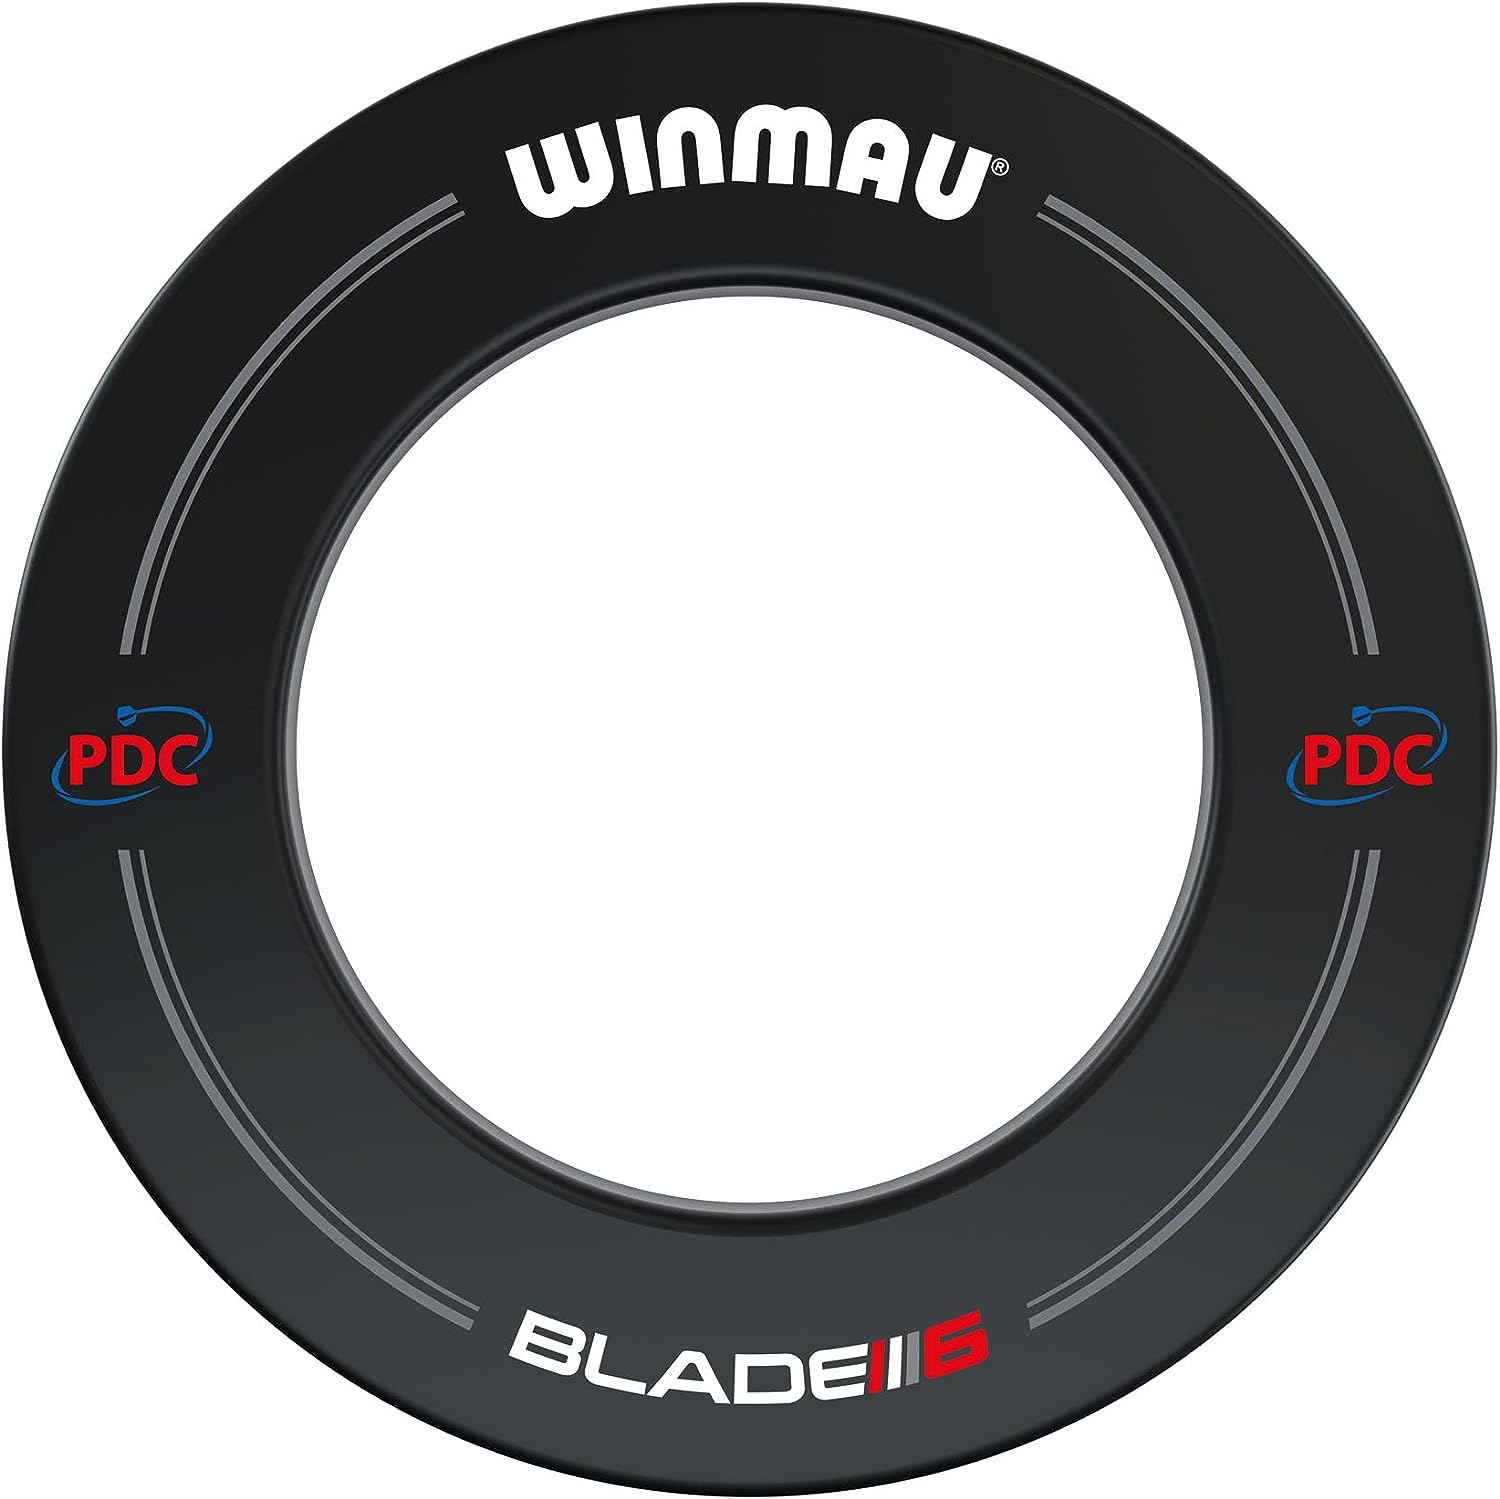 Blade 6 Winmau Dartboard Surround mit PDC Aufdruck - Schwarz